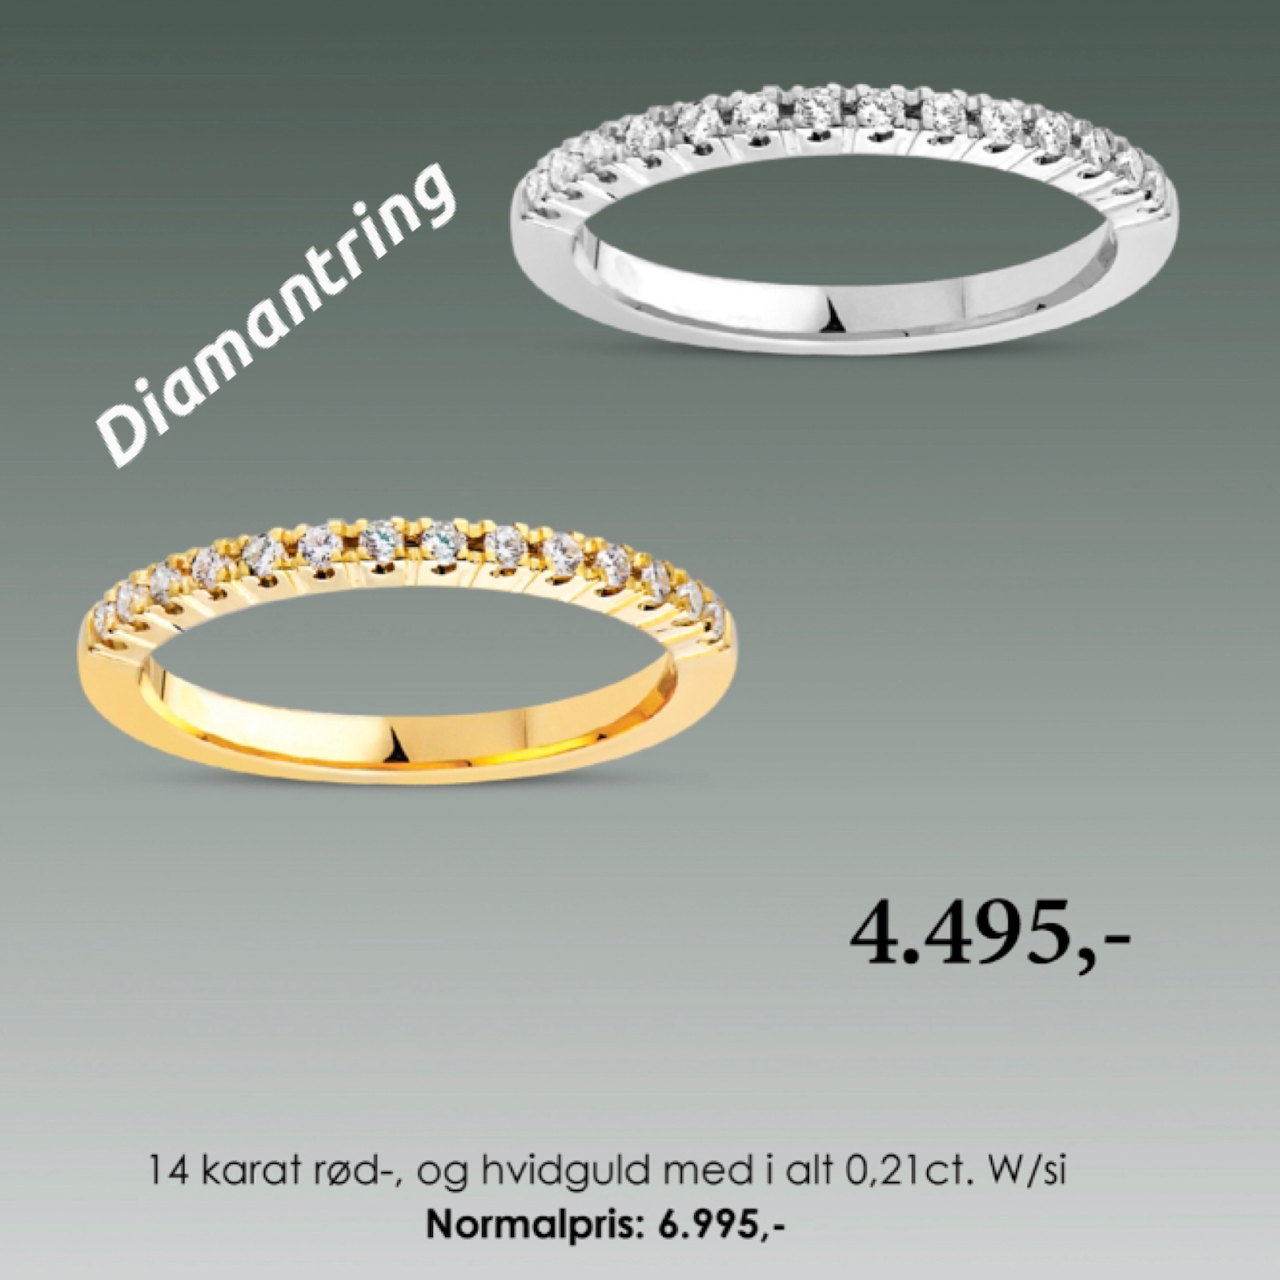 Pecani Bramming er en guldsmedbutik med eget guldsmedeværksted, vi har altid et pænt udvalg af tidens smykker og ure. - Gullsmed i Bramming